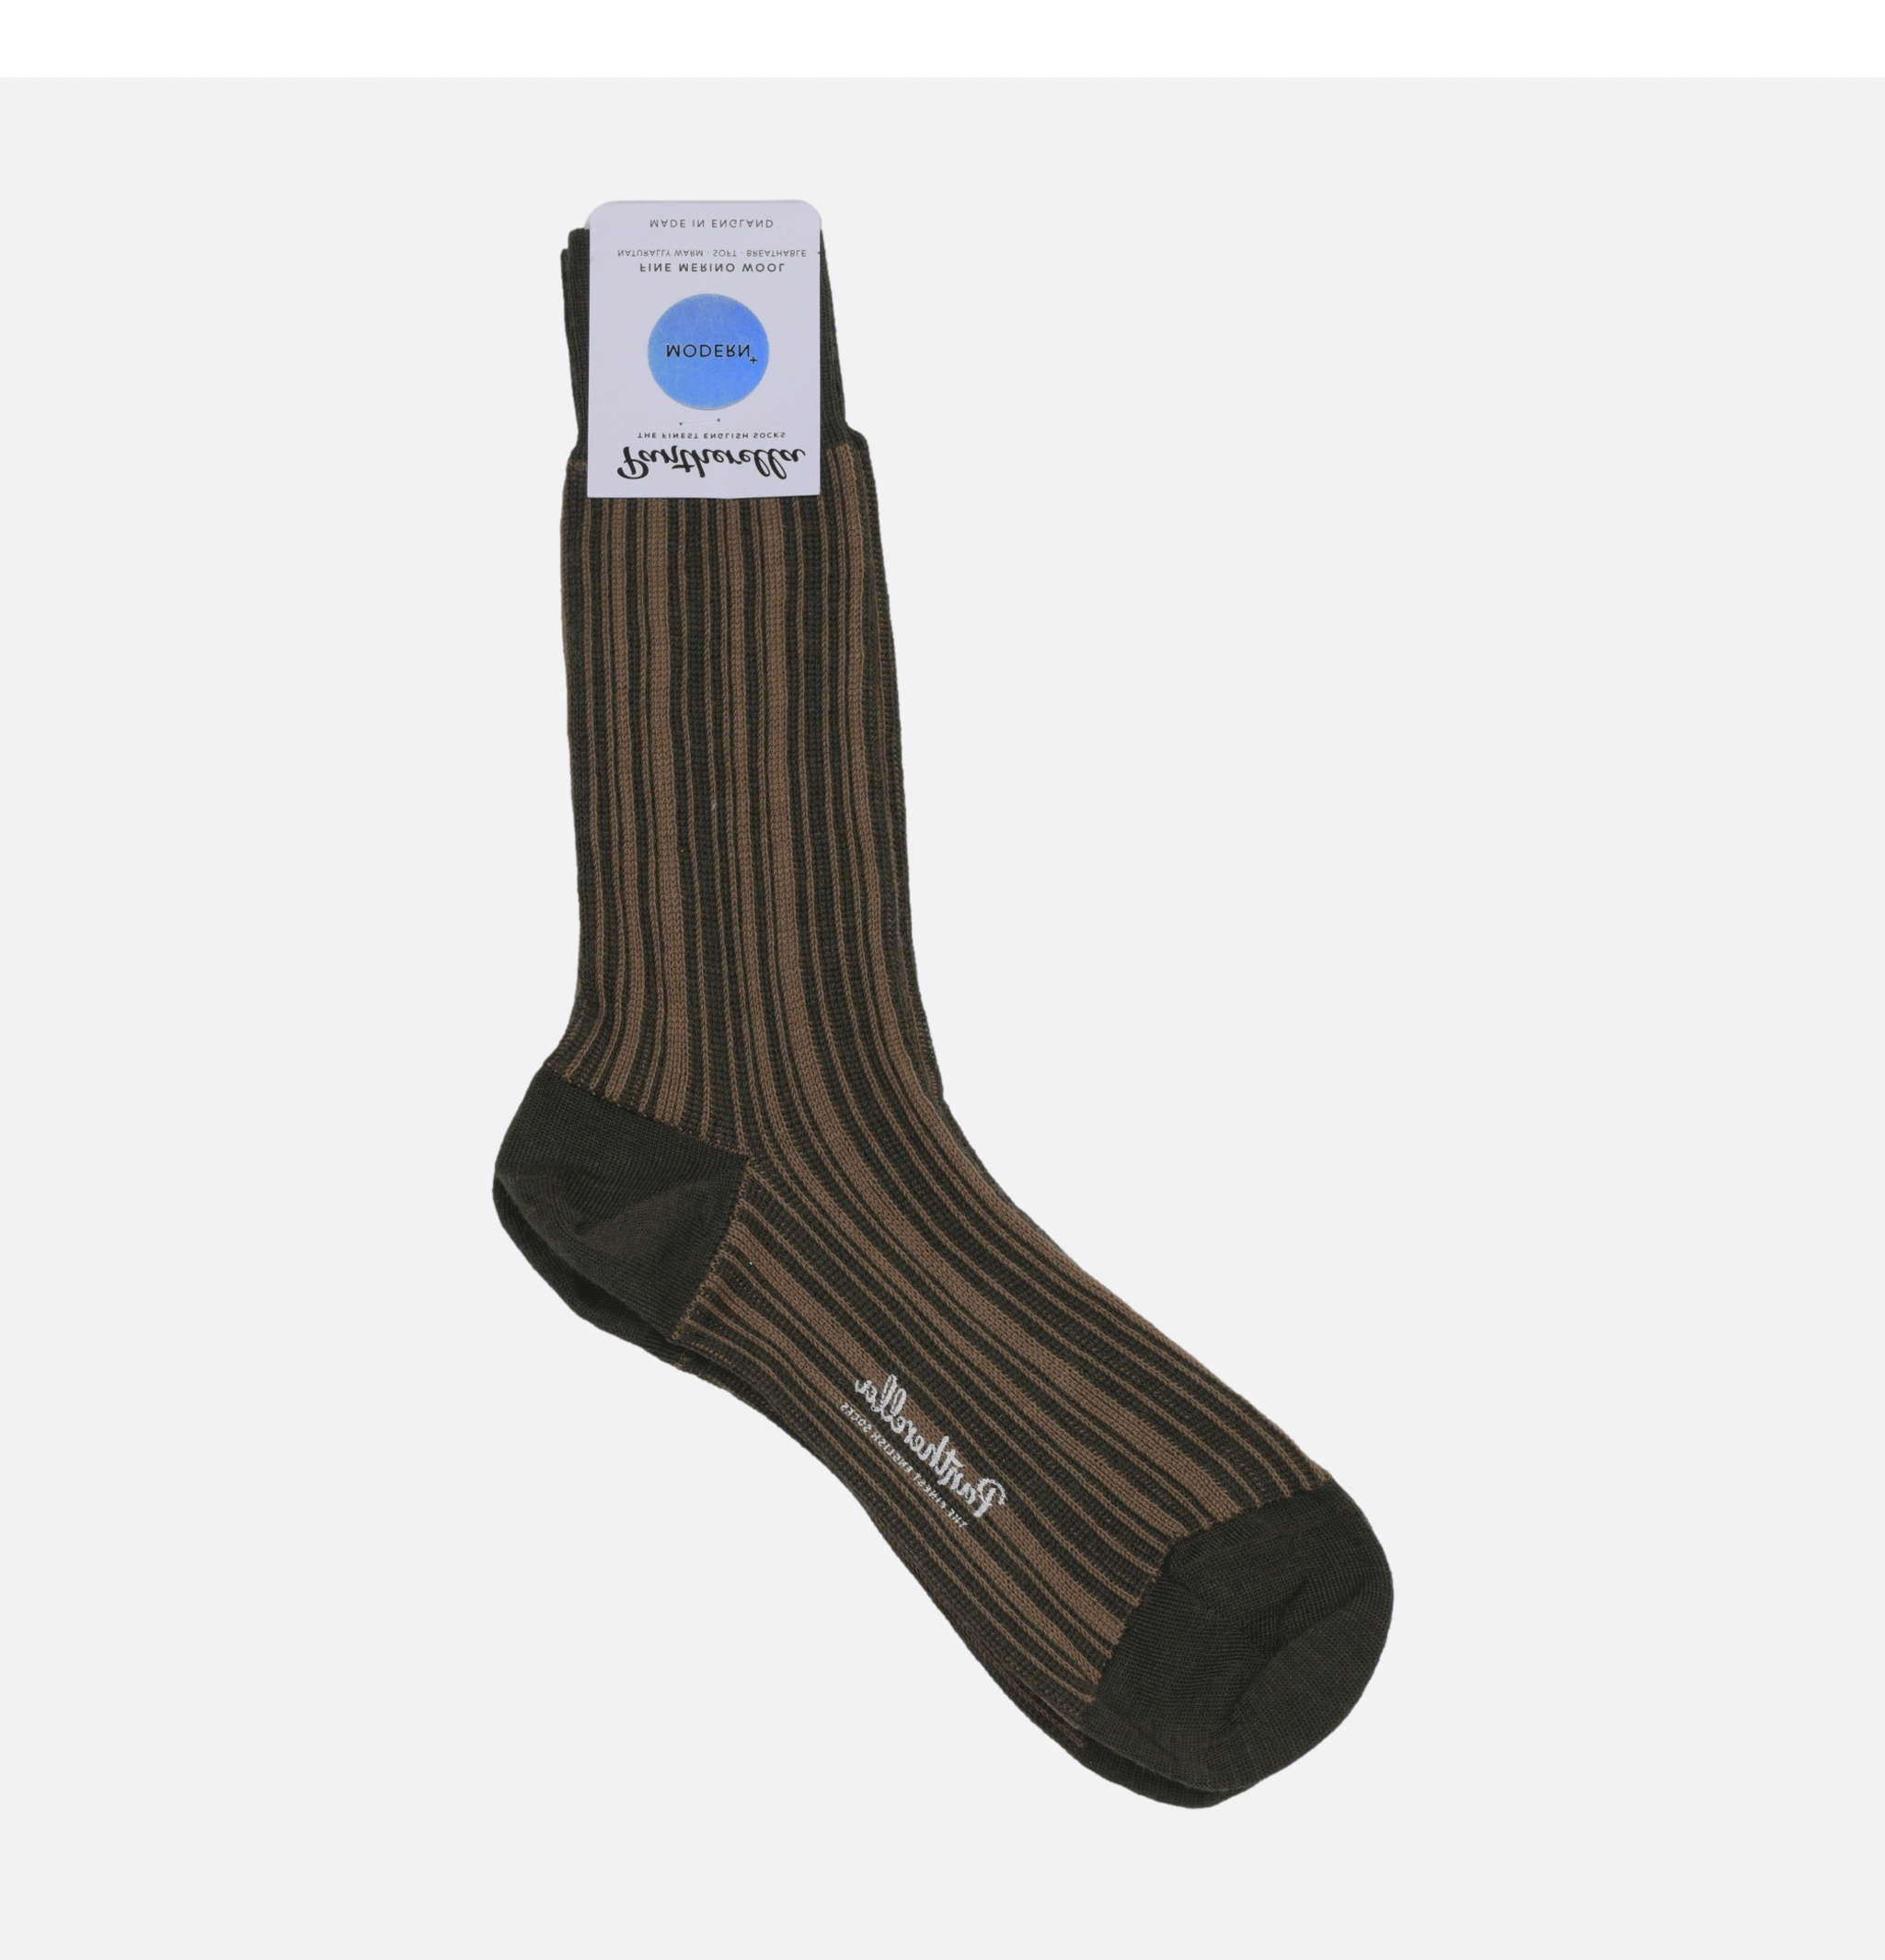 Pantherella 593088 Socks Mars Olive